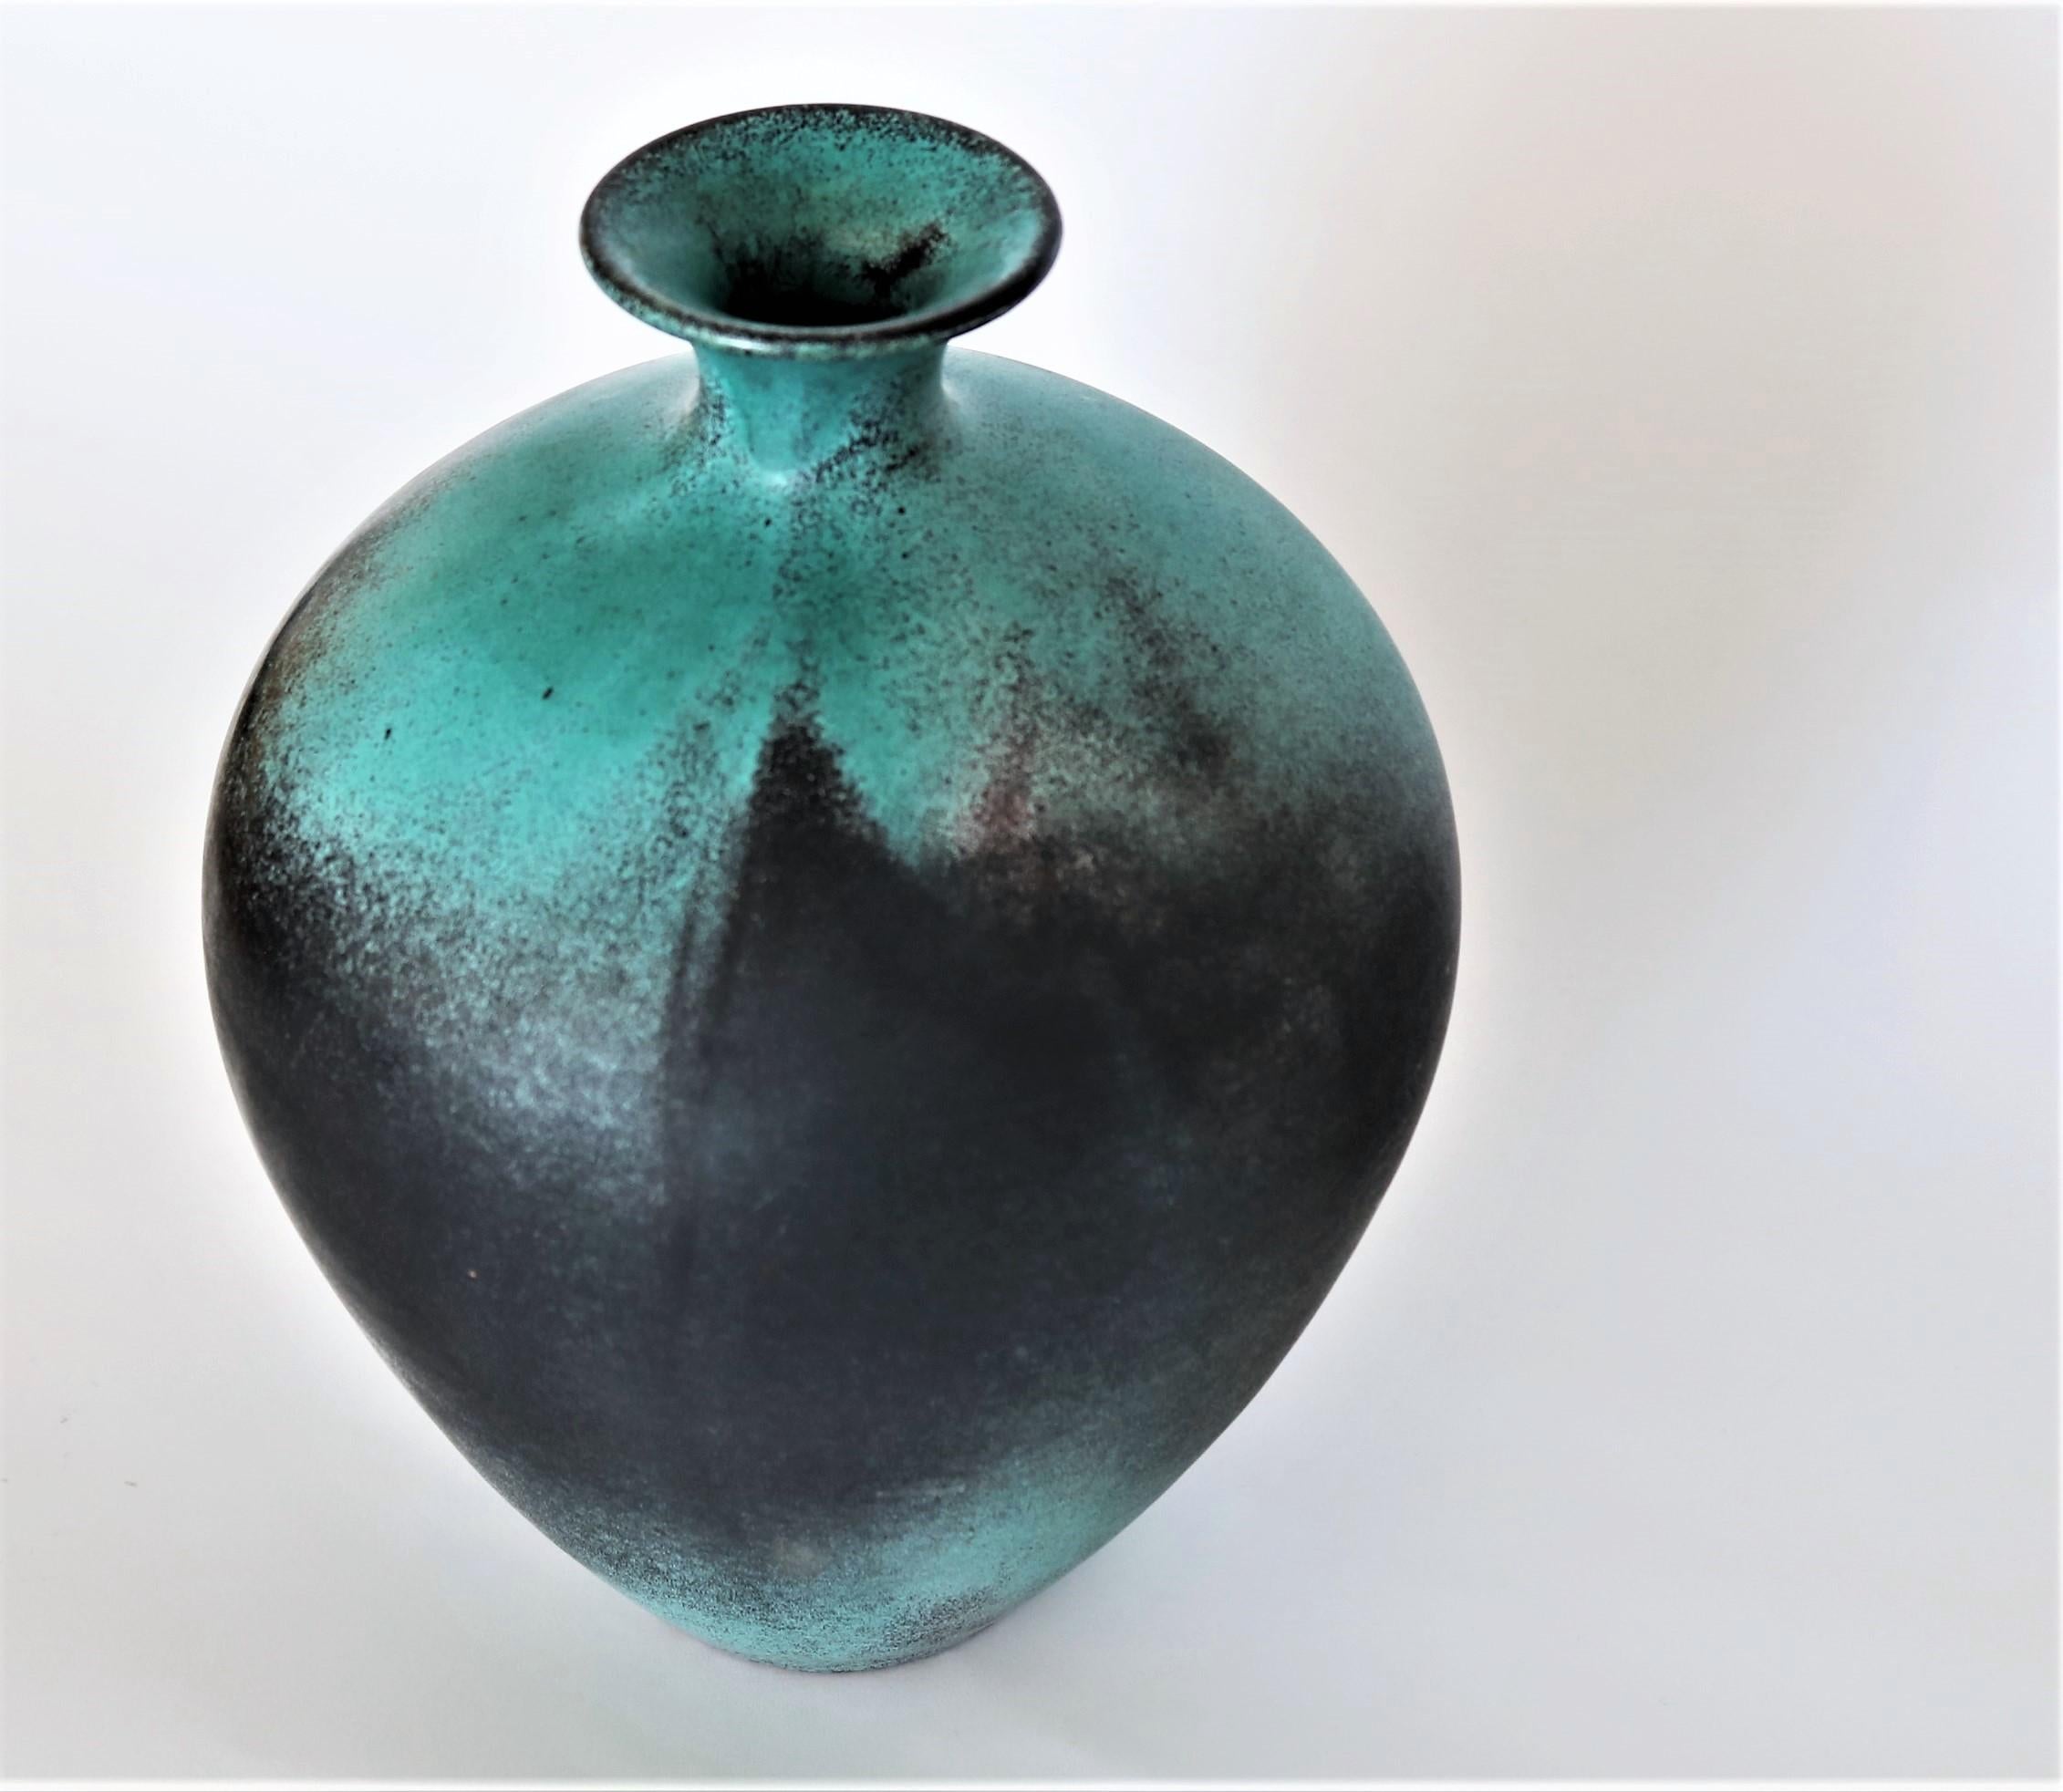 Scandinavian Modern Svend Hammershoj Earthenware Vases for Kähler Ceramics, Denmark, 1930s